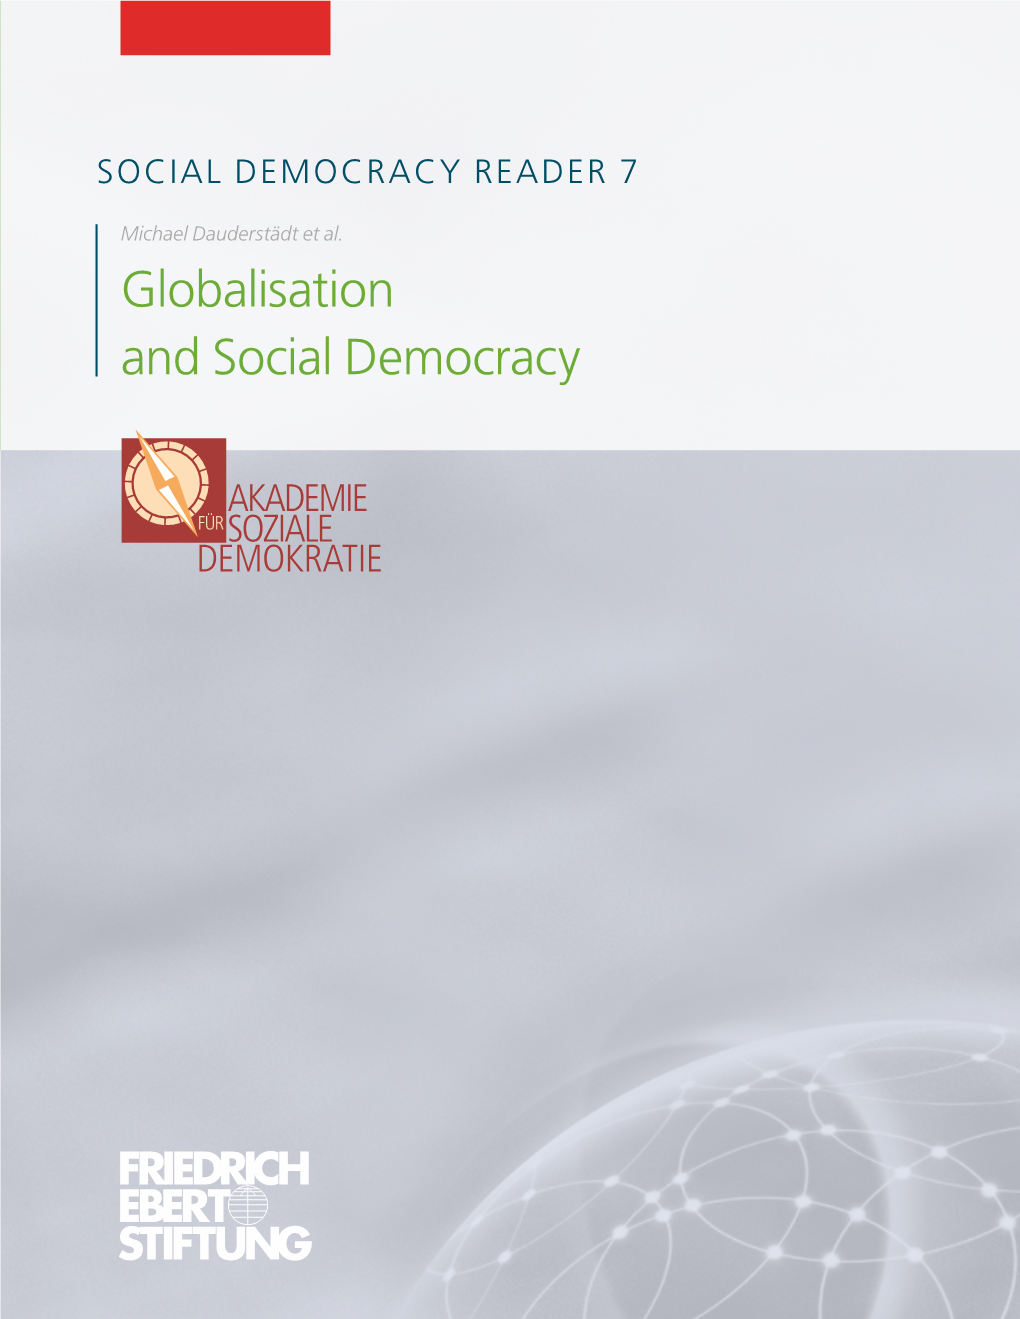 SOCIAL DEMOCRACY READER 7 SOCIAL DEMOCRACYREADER7 and Social Democracy Social and Globalisation Et Al